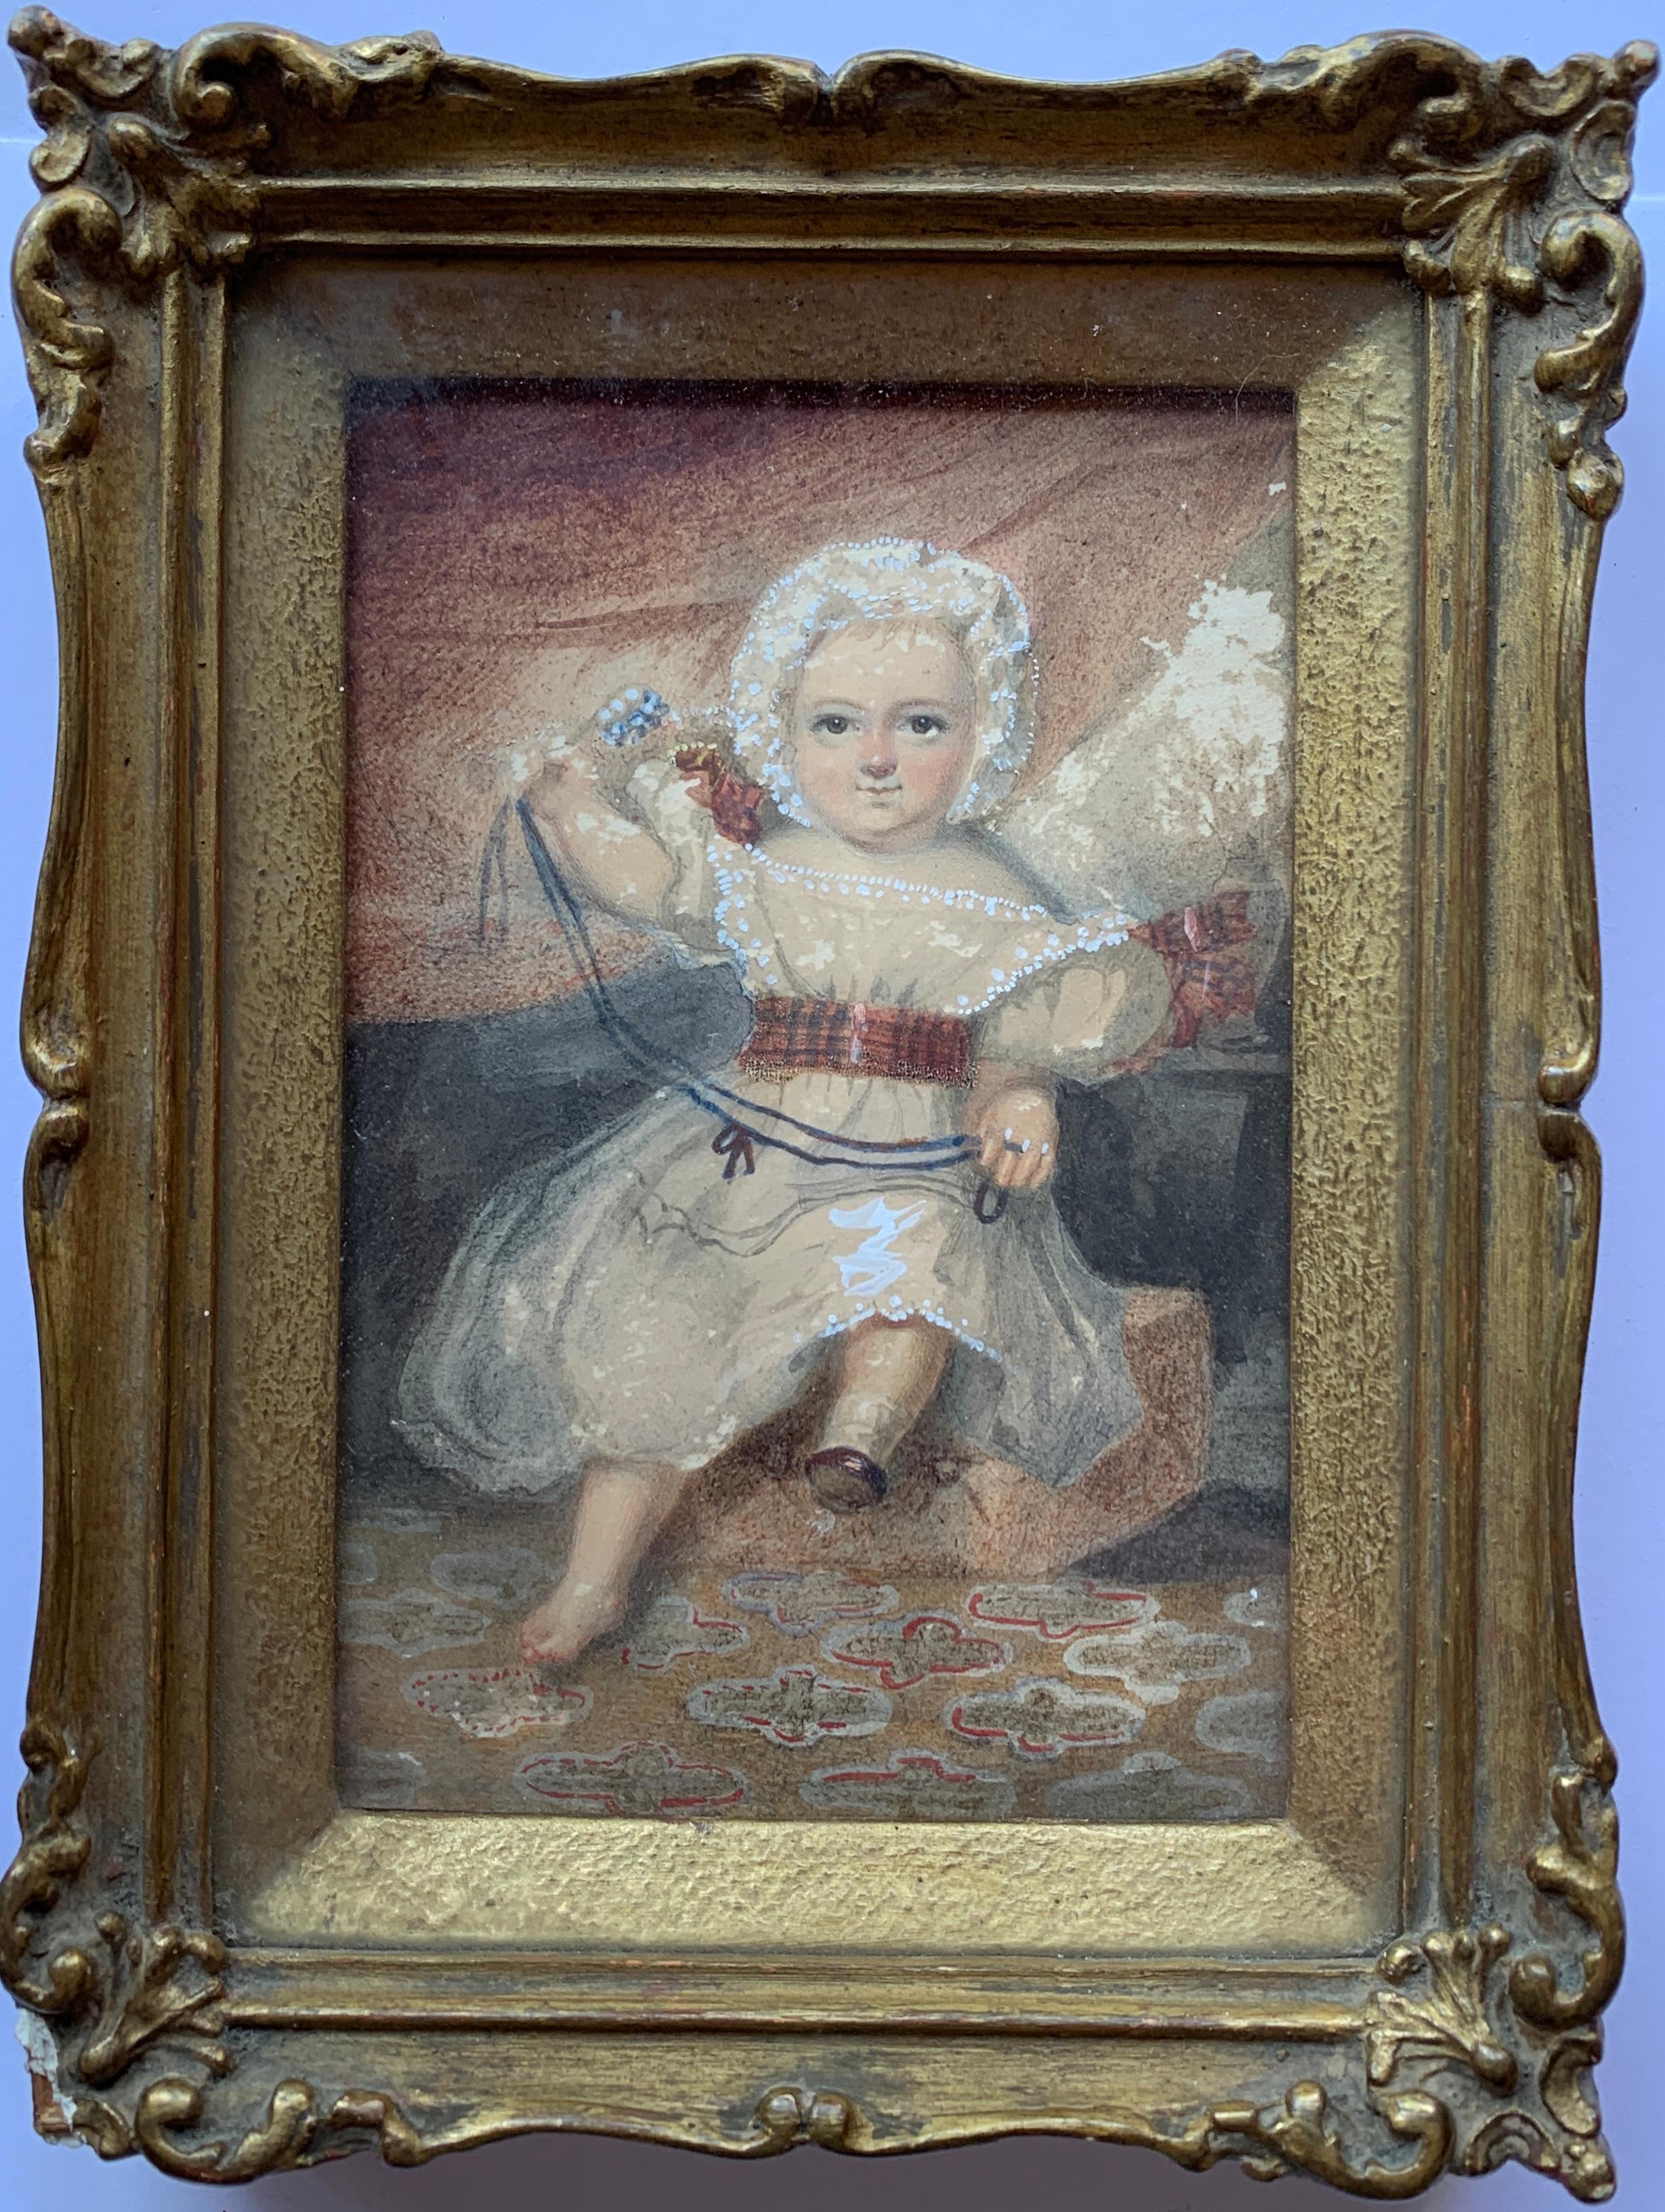 Unknown Figurative Art – Viktorianisches viktorianisches Porträt eines kleinen Babymädchens oder eines Kindes, das mit ihren Spielzeugen spielt